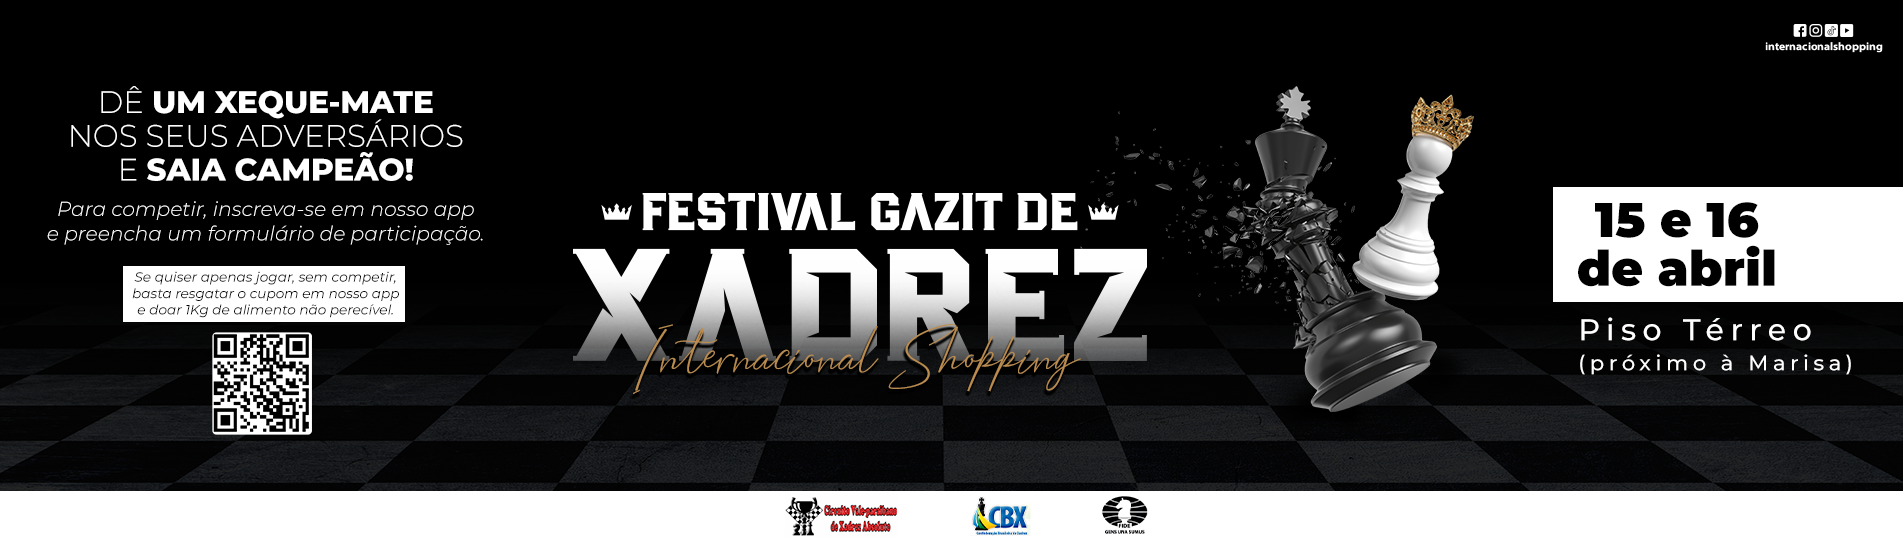 Festival de Xadrez